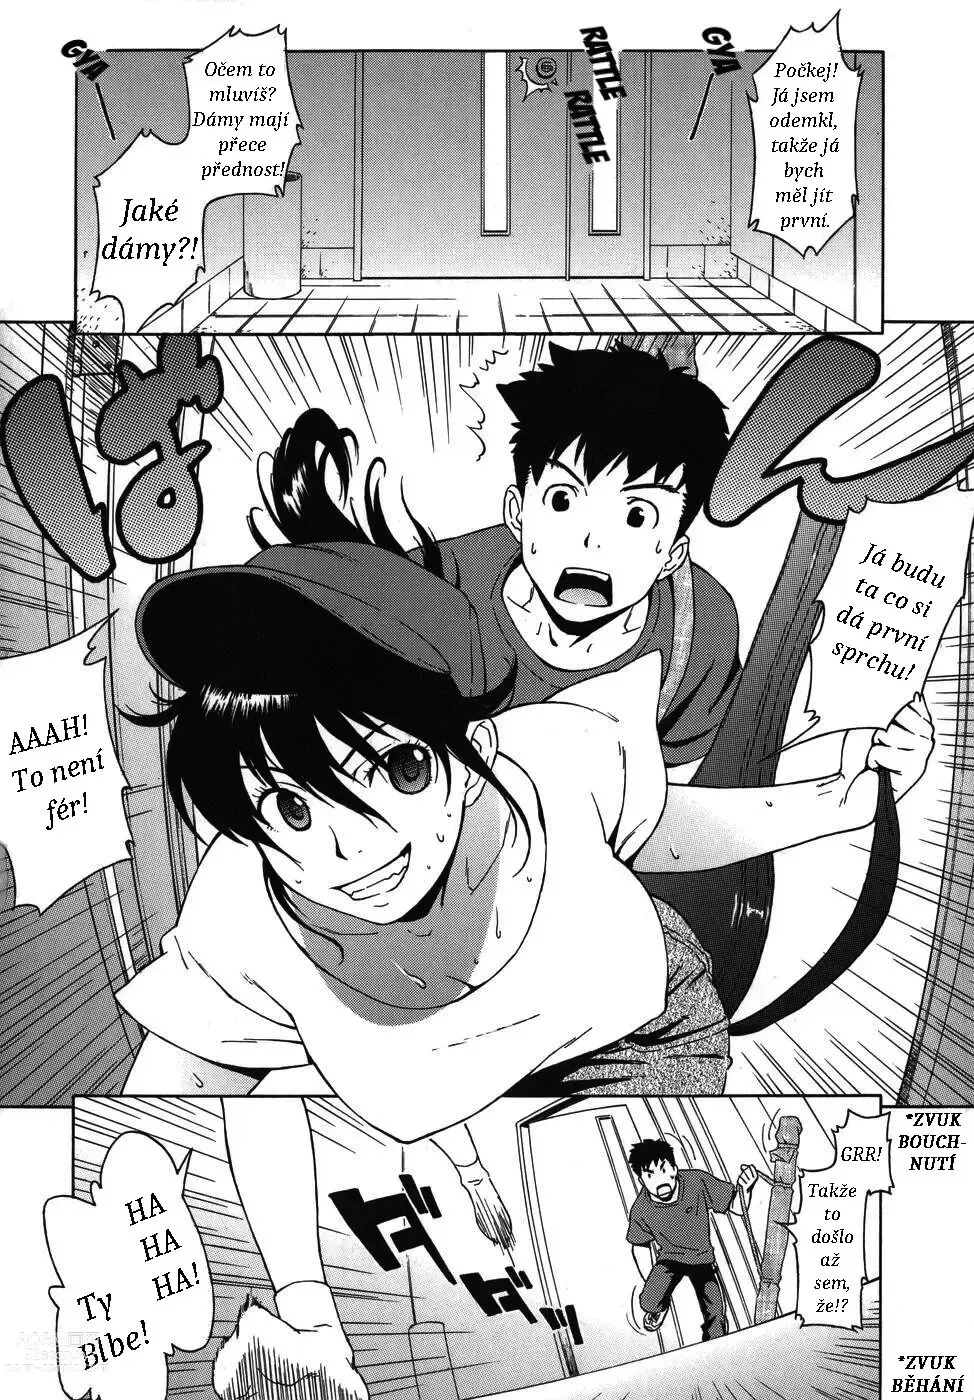 Page 2 of manga Shampoo